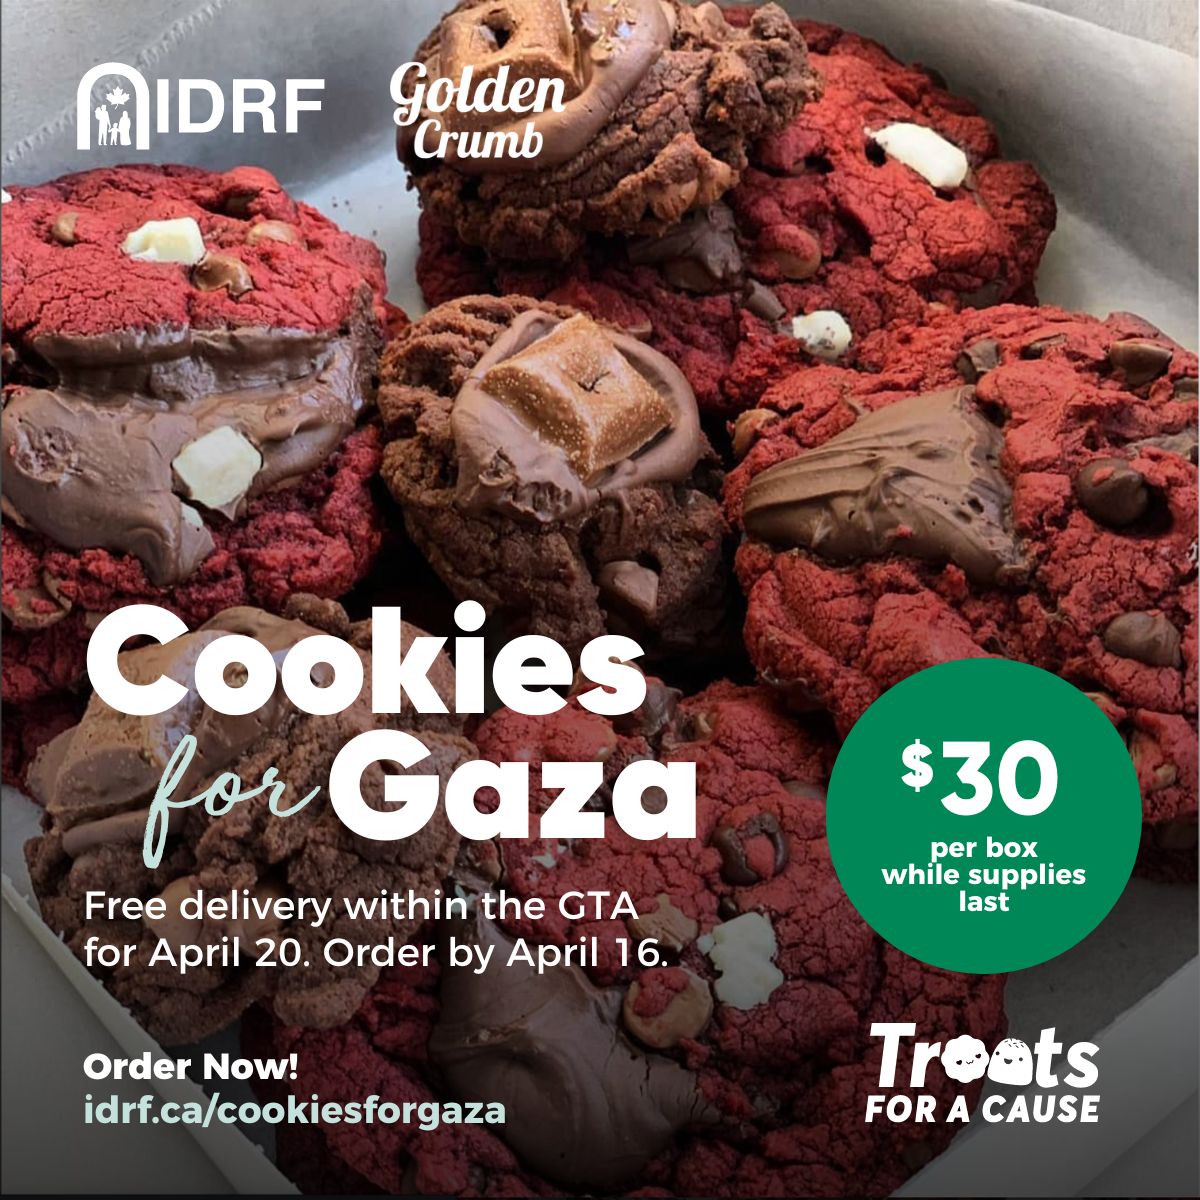 Cliquer ici pour obtenir plus d'informations sur Cookies for a Cause (GTA)